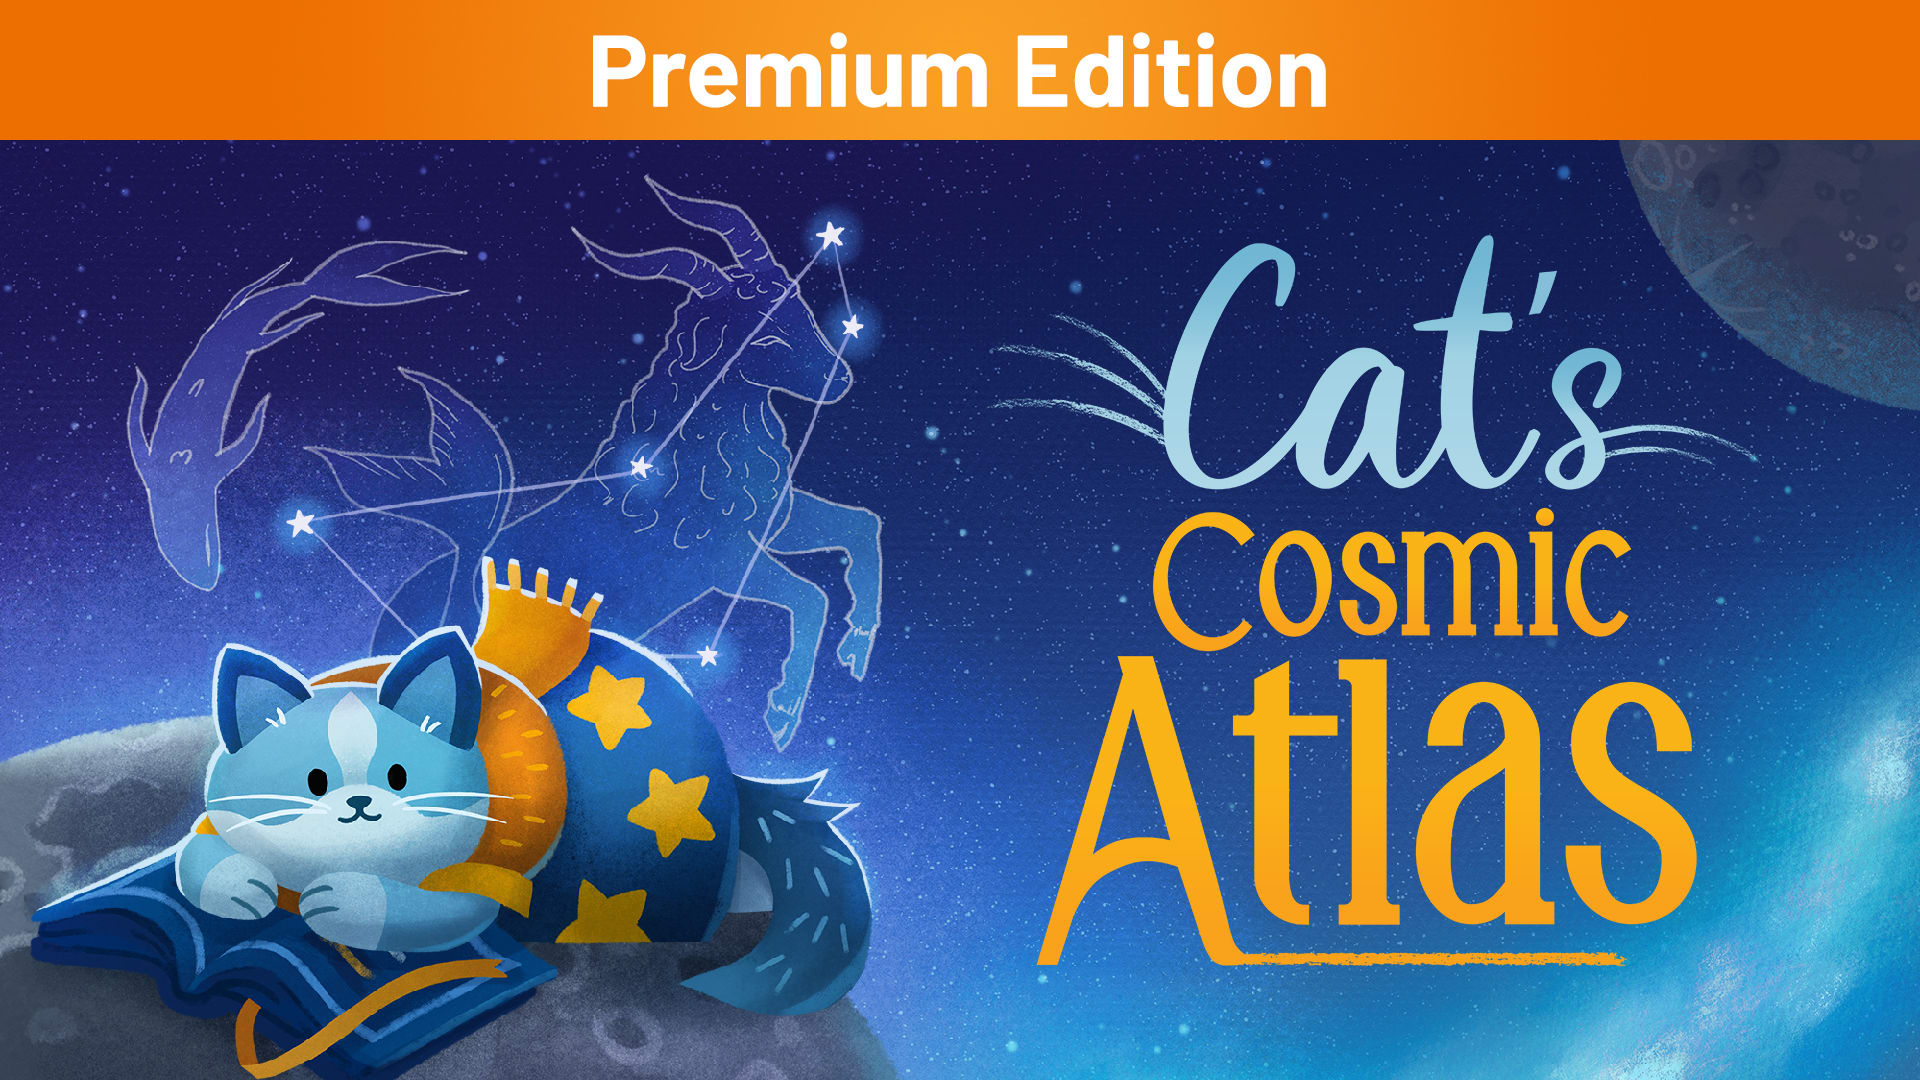 Cat's Cosmic Atlas Premium Edition